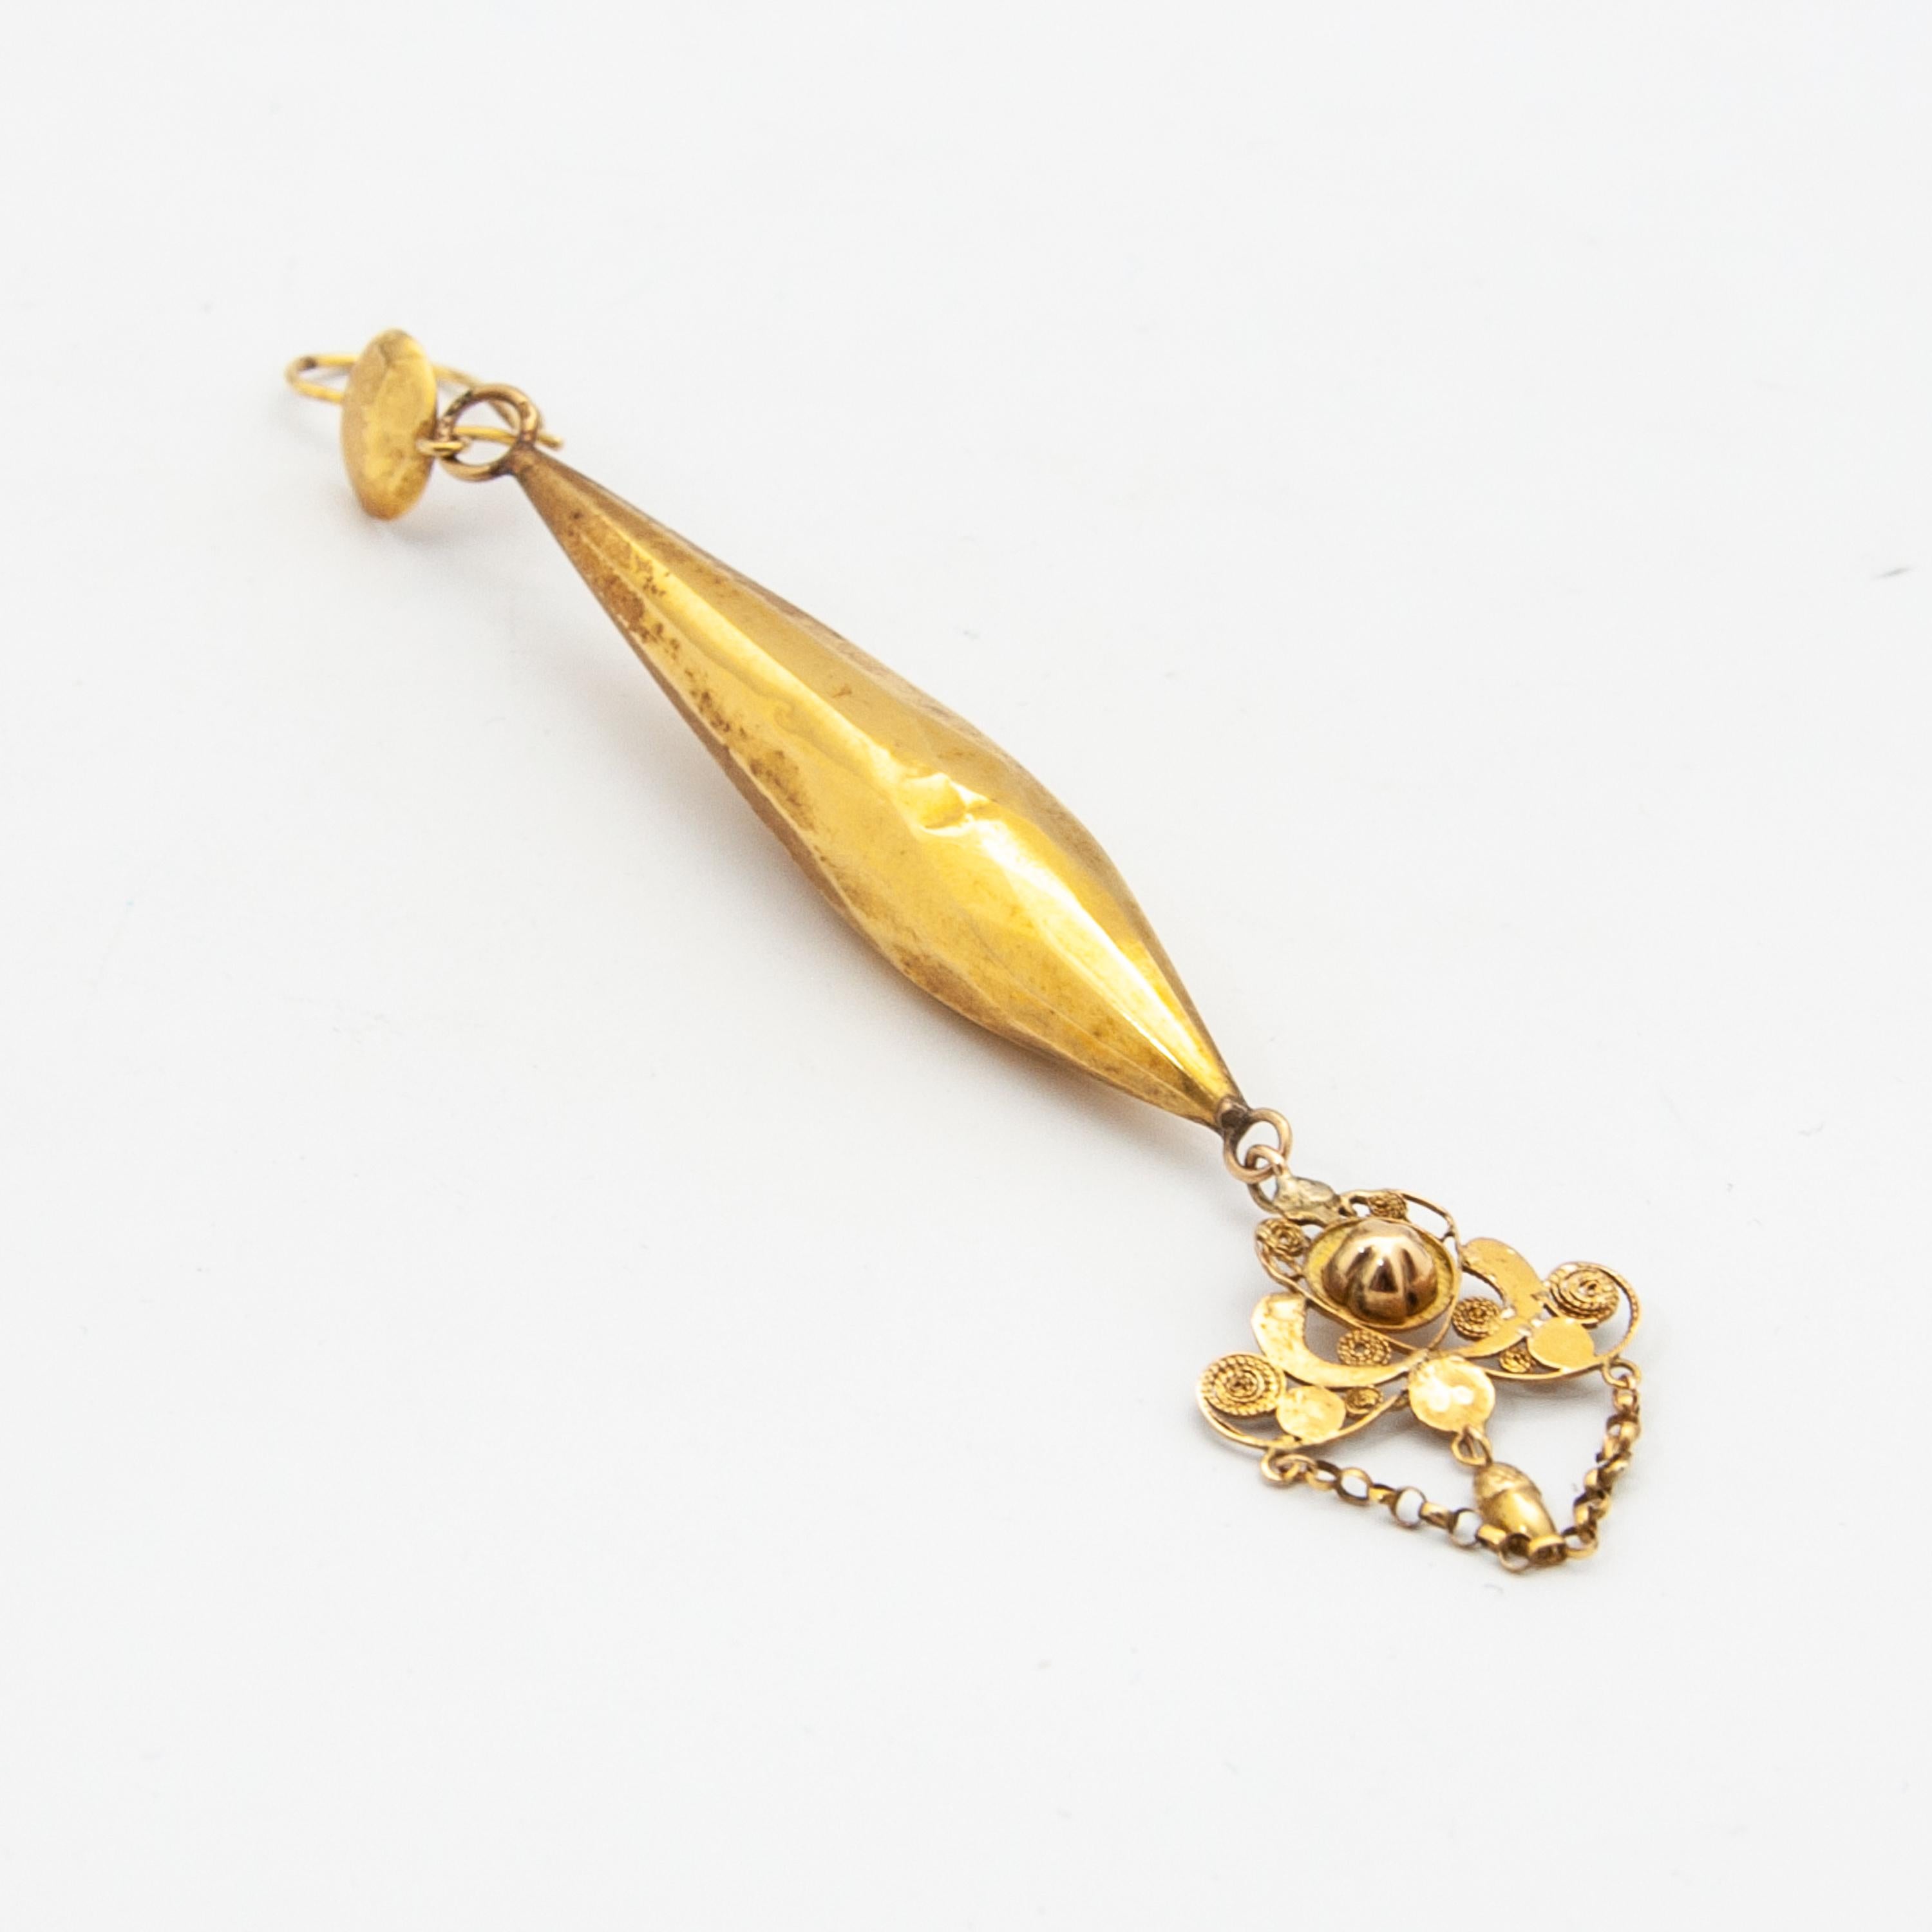 Dieser antike Ohrring stammt aus dem 19. Jahrhundert und ist aus 14 Karat Gelbgold gefertigt. Diese Art von Ohrringen wurde im 19. Jahrhundert von Frauen in der Provinz Nordbrabant getragen. Die Unterseite des Ohrrings hat ein feines